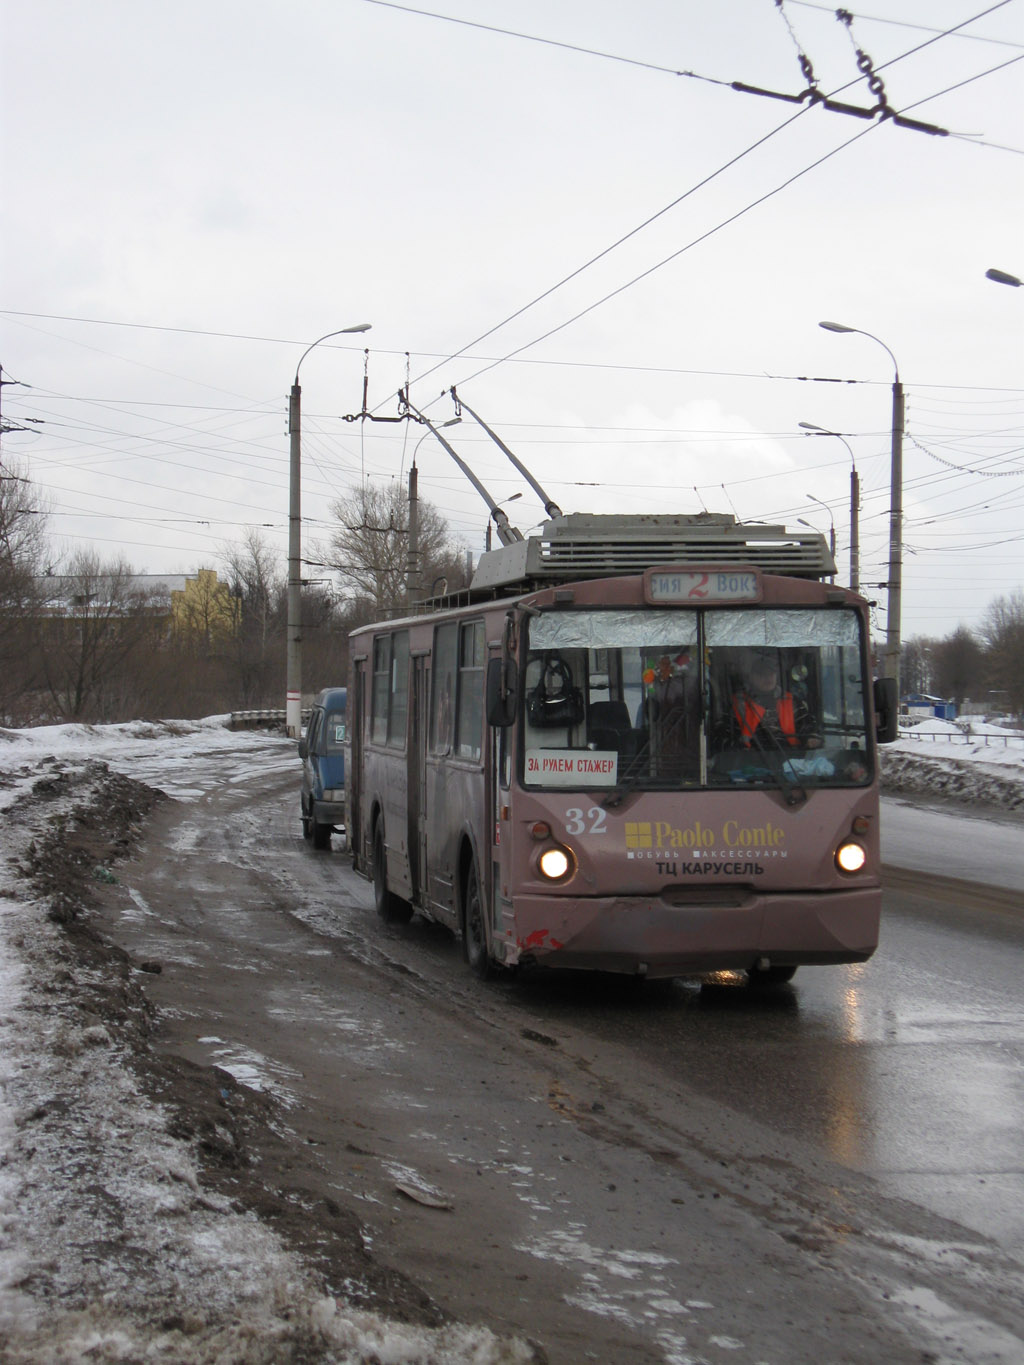 Tver, VZTM-5284 N°. 32; Tver — Trolleybus lines: Proletarsky district